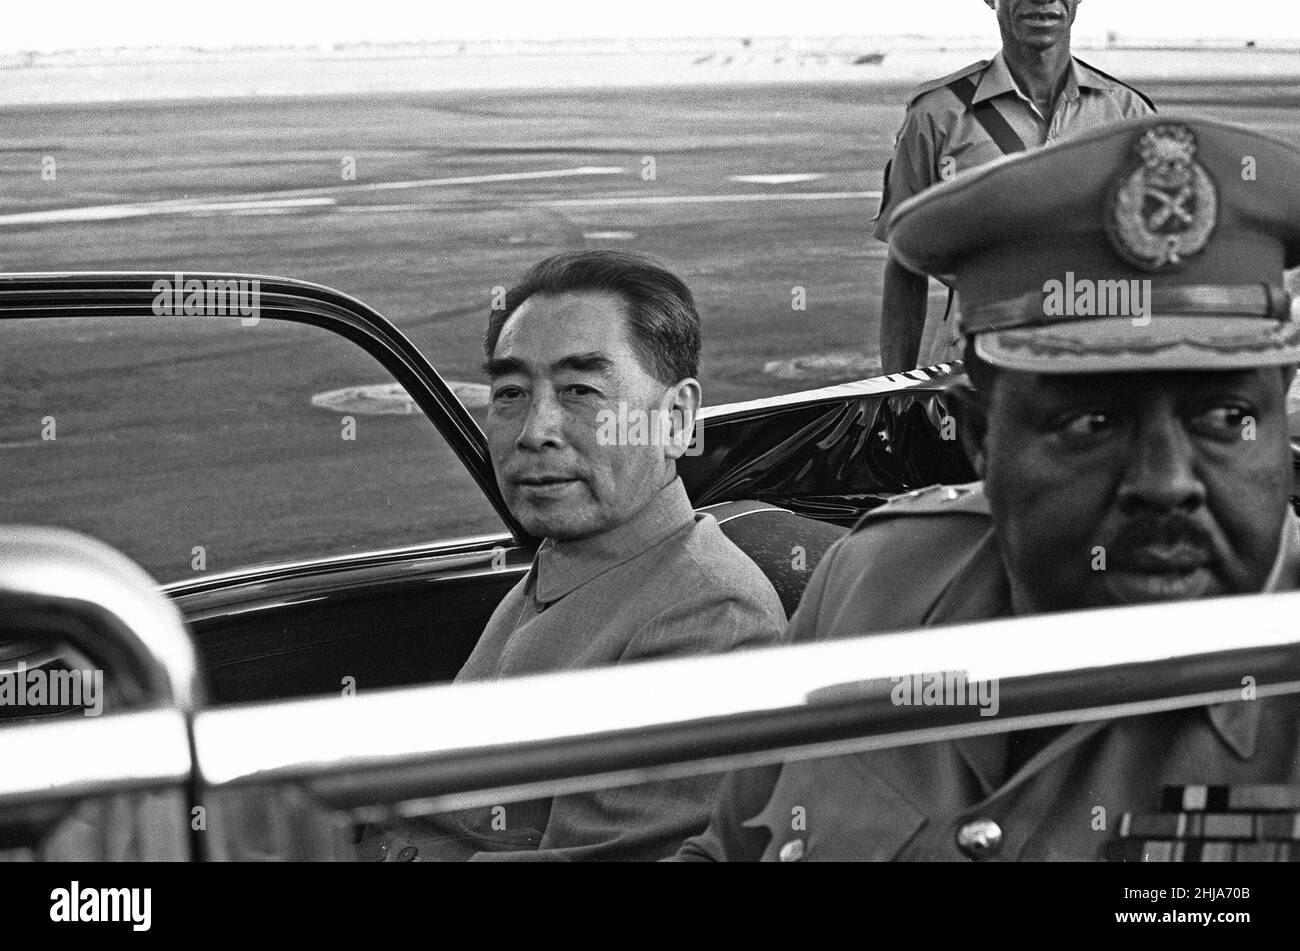 Zhou Enlai Premier ministre de la République populaire de Chine, vu ici arrivant à l'aéroport de Khartoum.1st février 1964 Banque D'Images